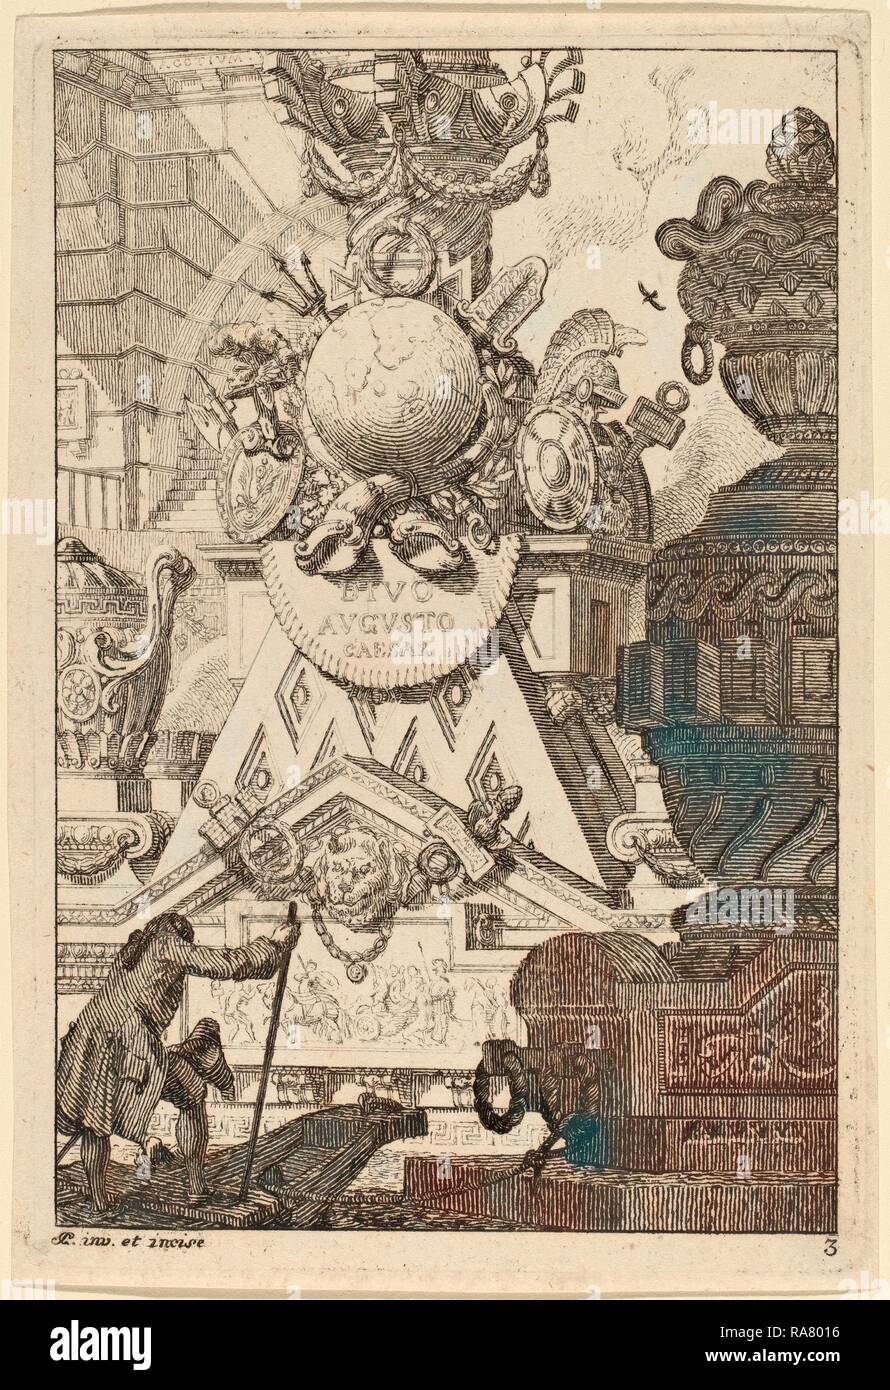 Carl Schütz (austriaco, 1745 - 1800), la fantasia di un antico trofeo di Augusto, 1770-1780, incisione su carta vergata reinventato Foto Stock